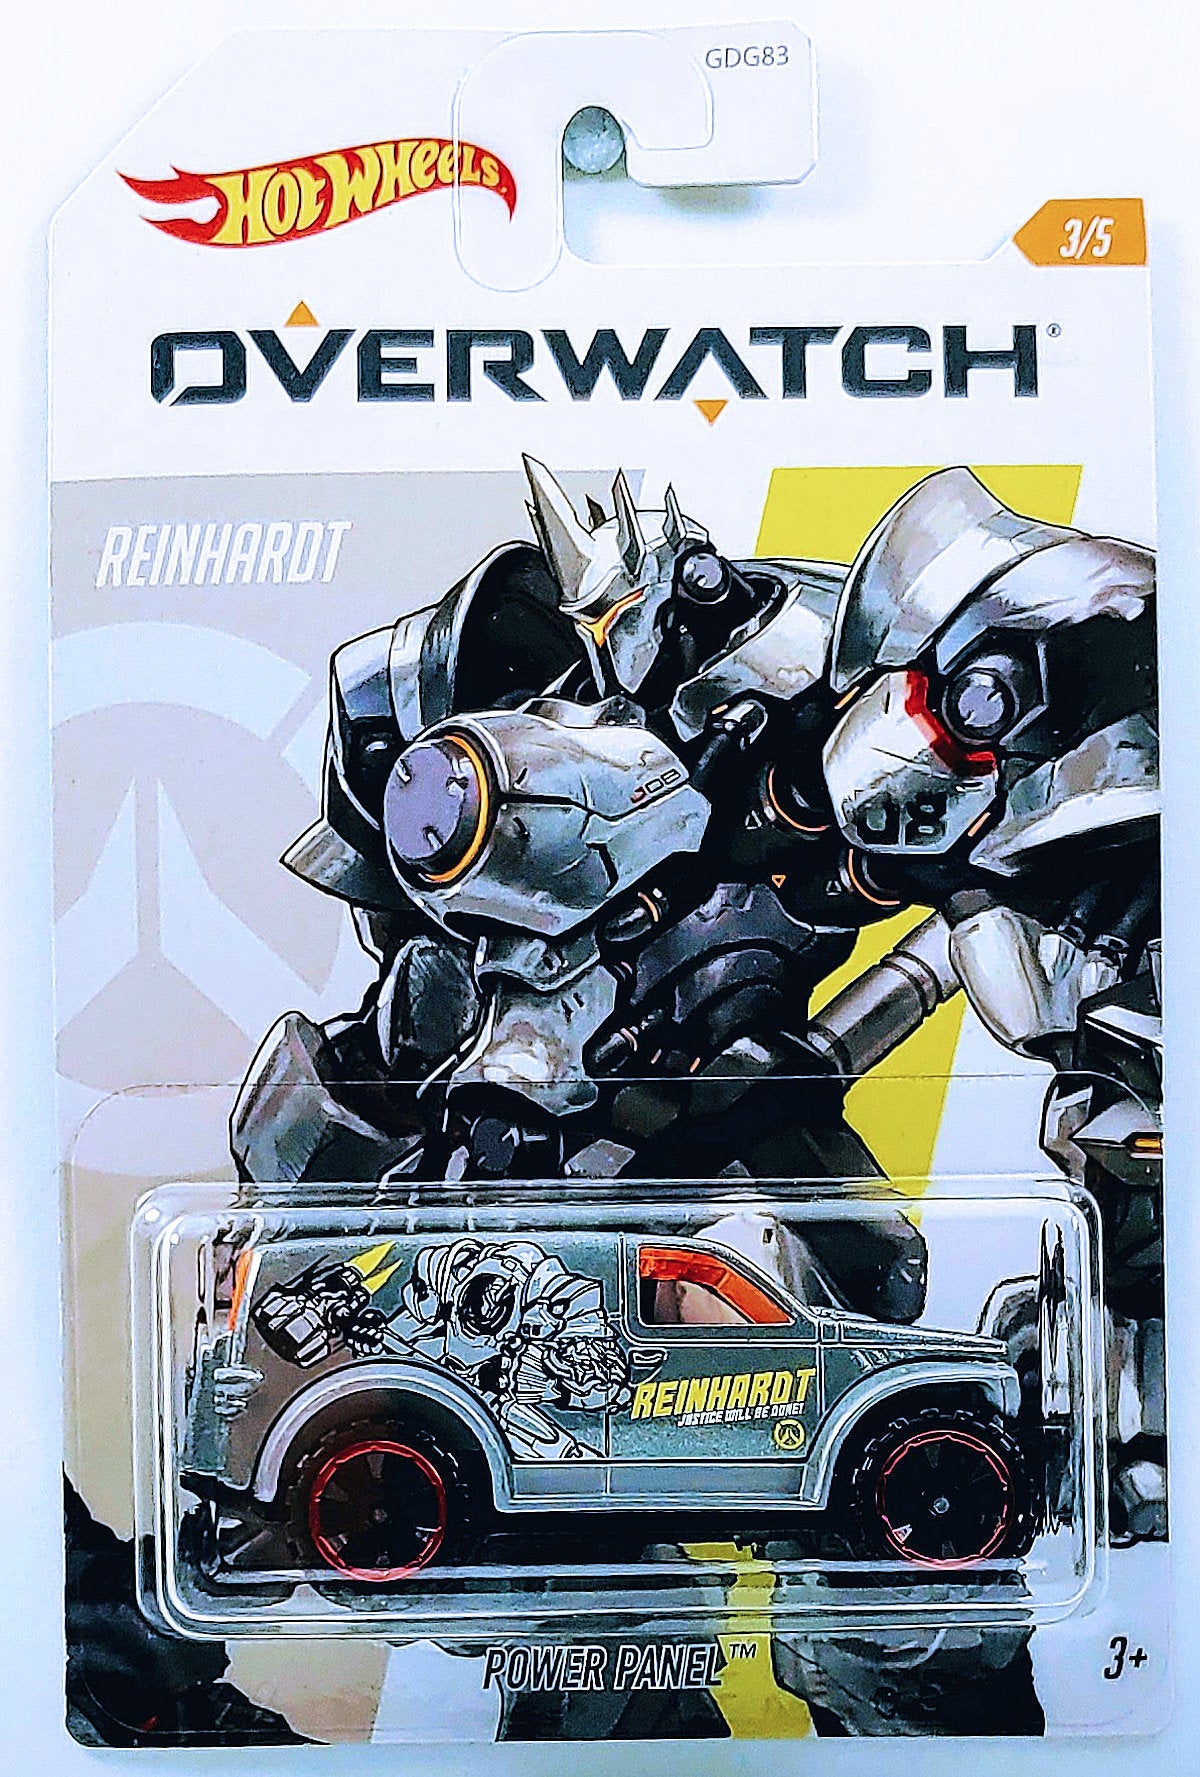 Hot Wheels 2020 - Overwatch 3/5 - Power Panel - Metallic Gray / Reinhardt - Walmart Exclusive